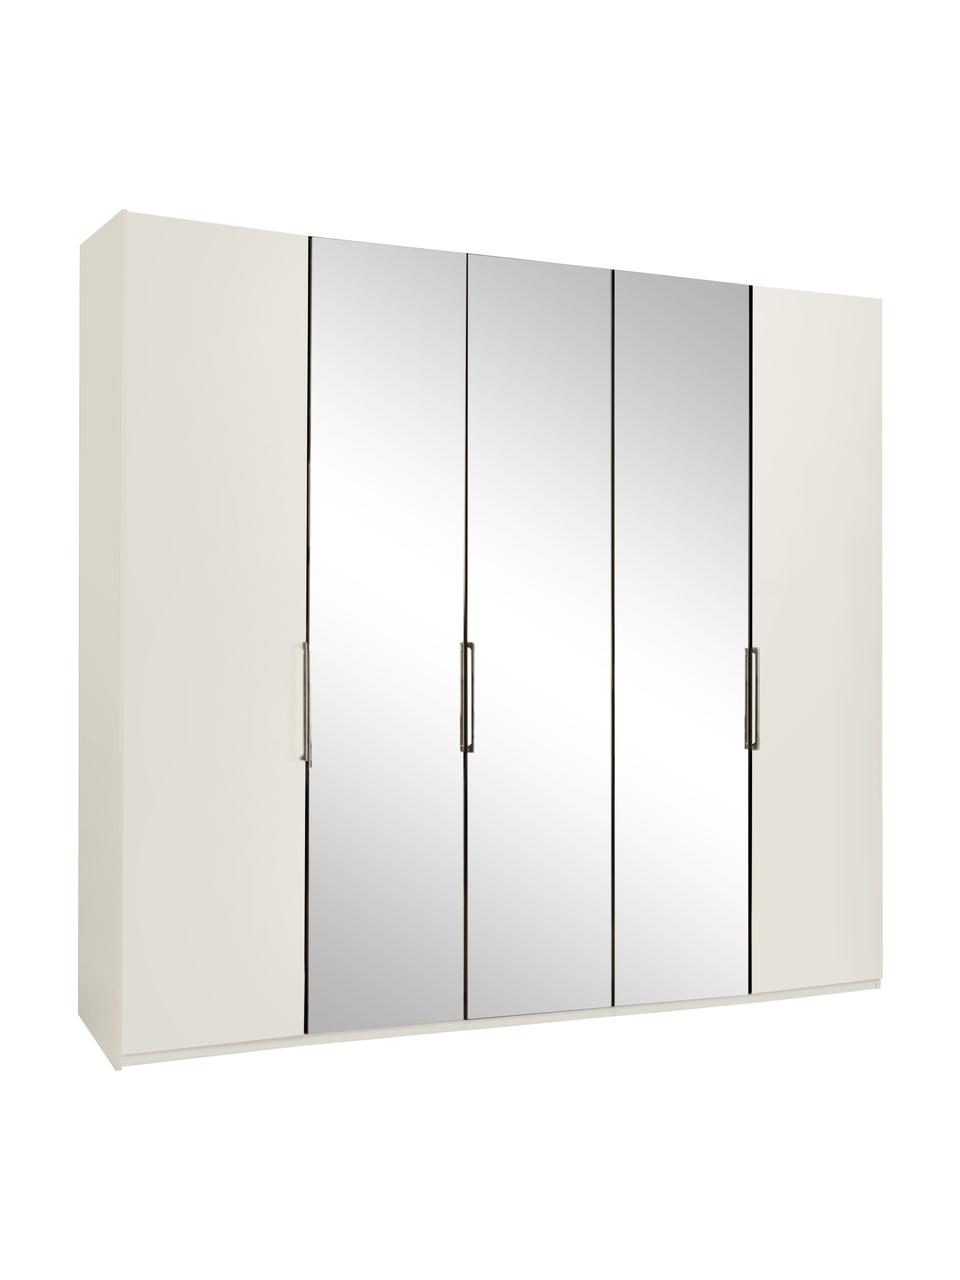 Šatní skříň se zrcadlovými dveřmi Monaco, 5dvéřová, Bílá, se zrcadlovými dveřmi, Š 250 cm, V 216 cm